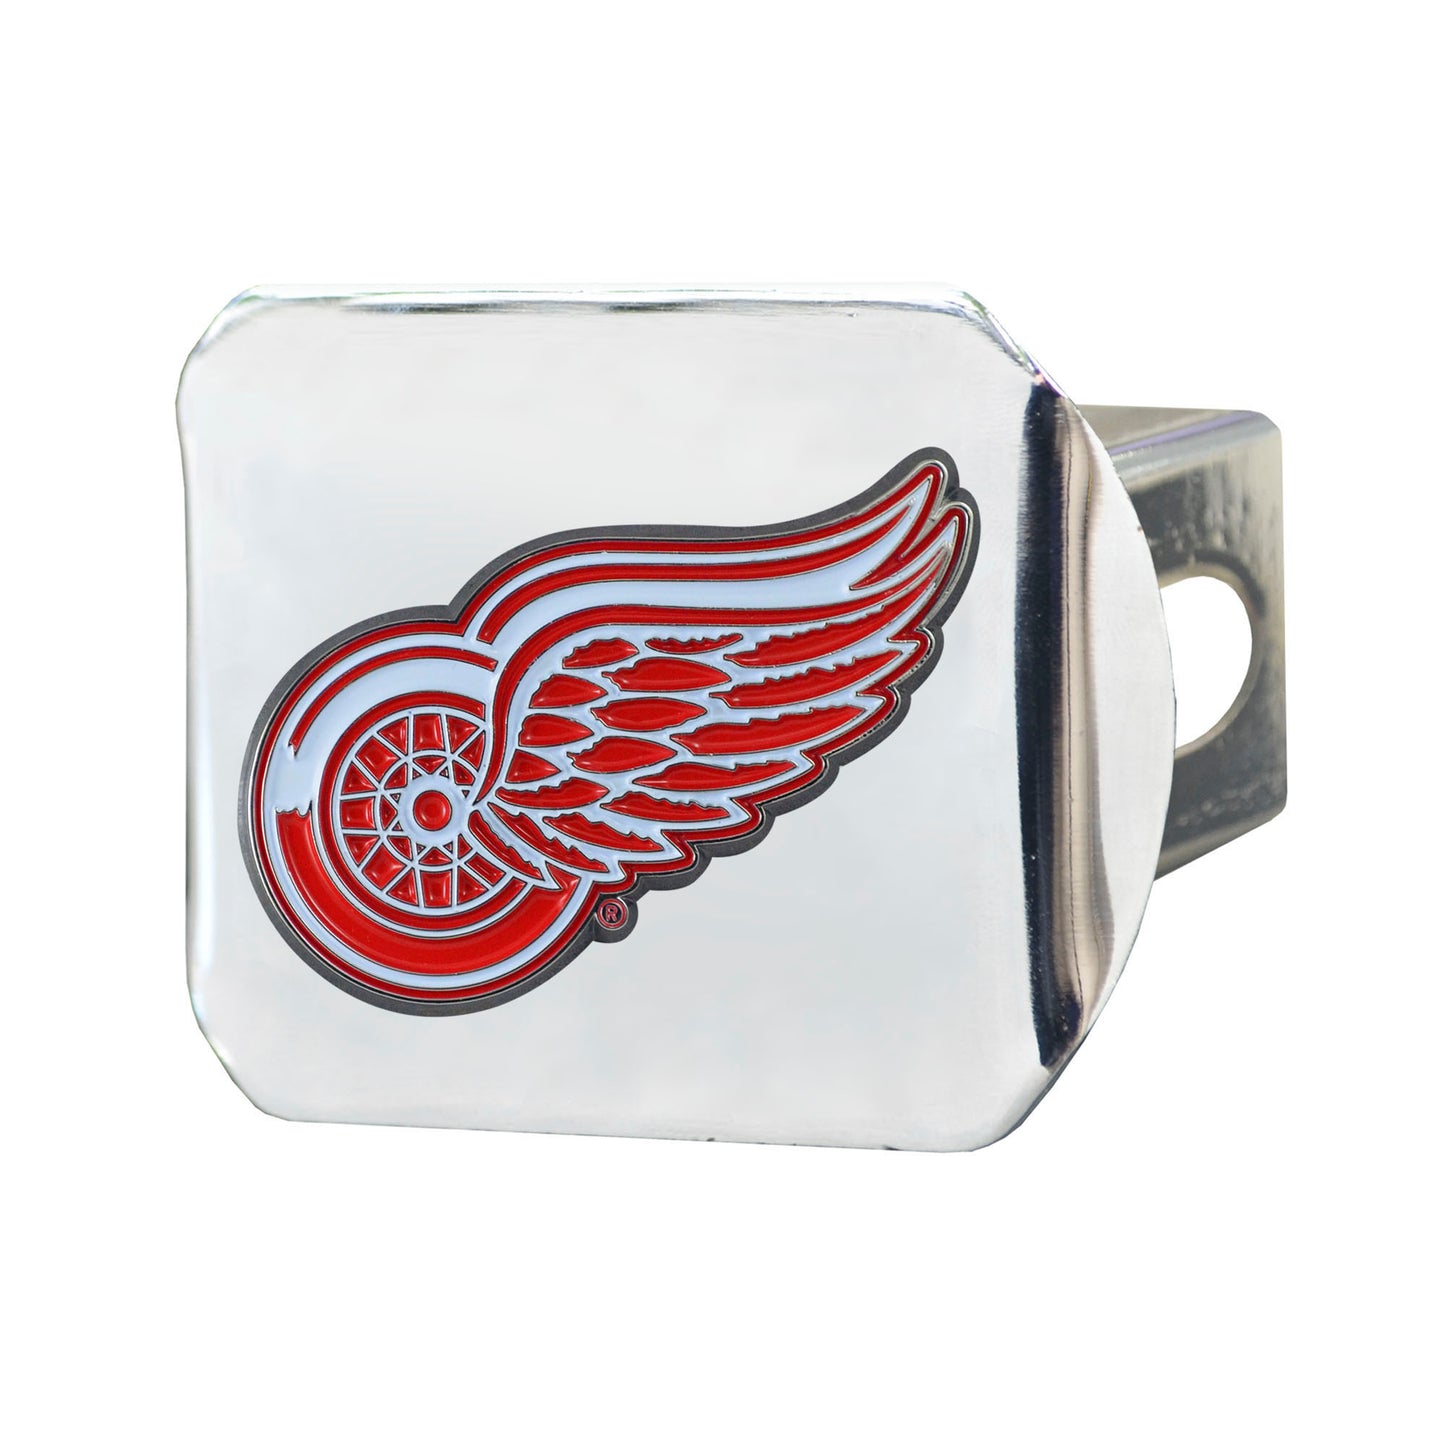 Detroit Red Wings Hitch Cover - 3D Color Emblem